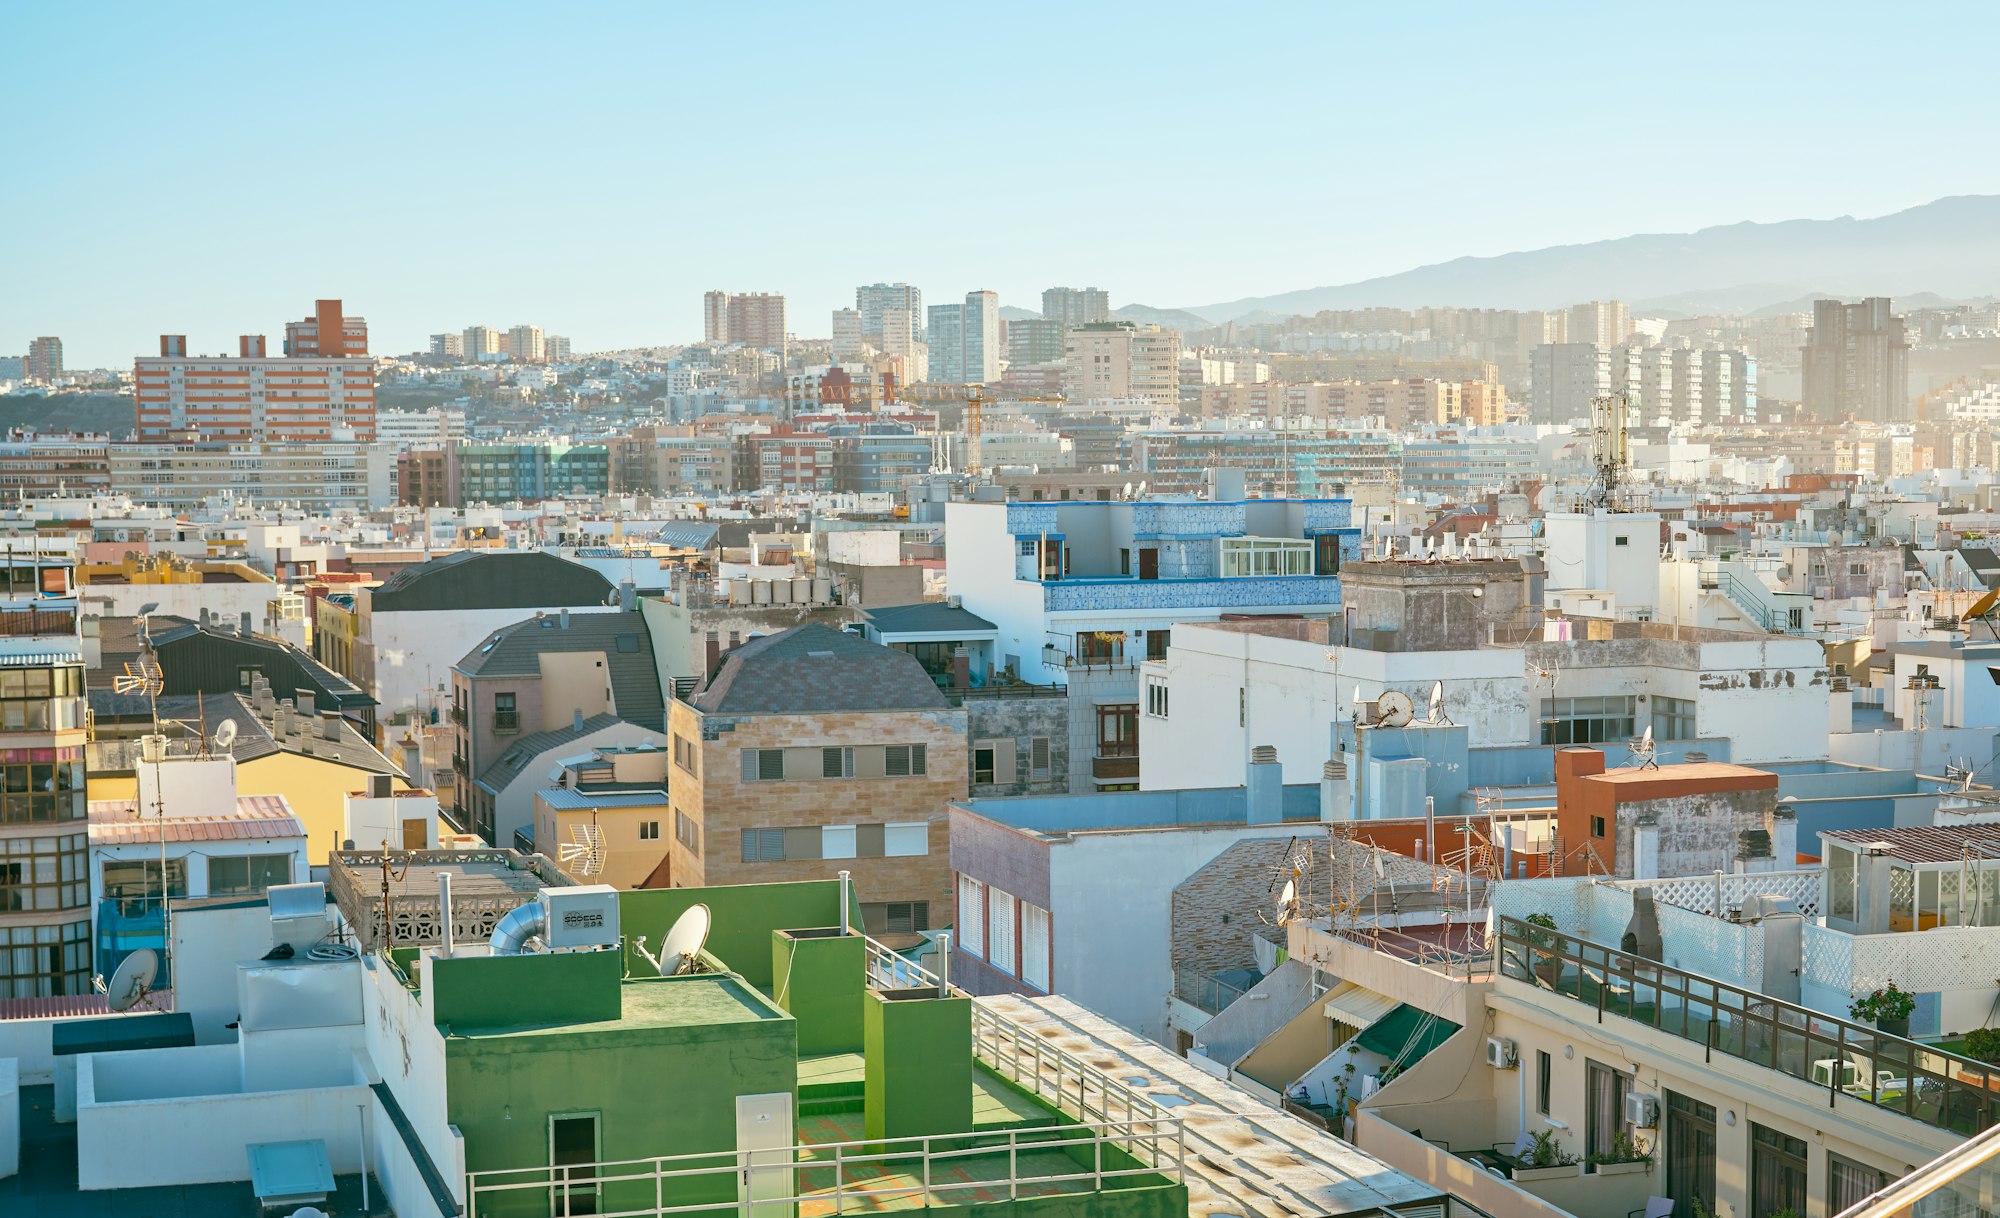 Rooftop View (Vista de uma cidade a partir de um terraço. Foto tirada a luz do dia.) (Photo by Vidar Nordli-Mathisen / Unsplash)